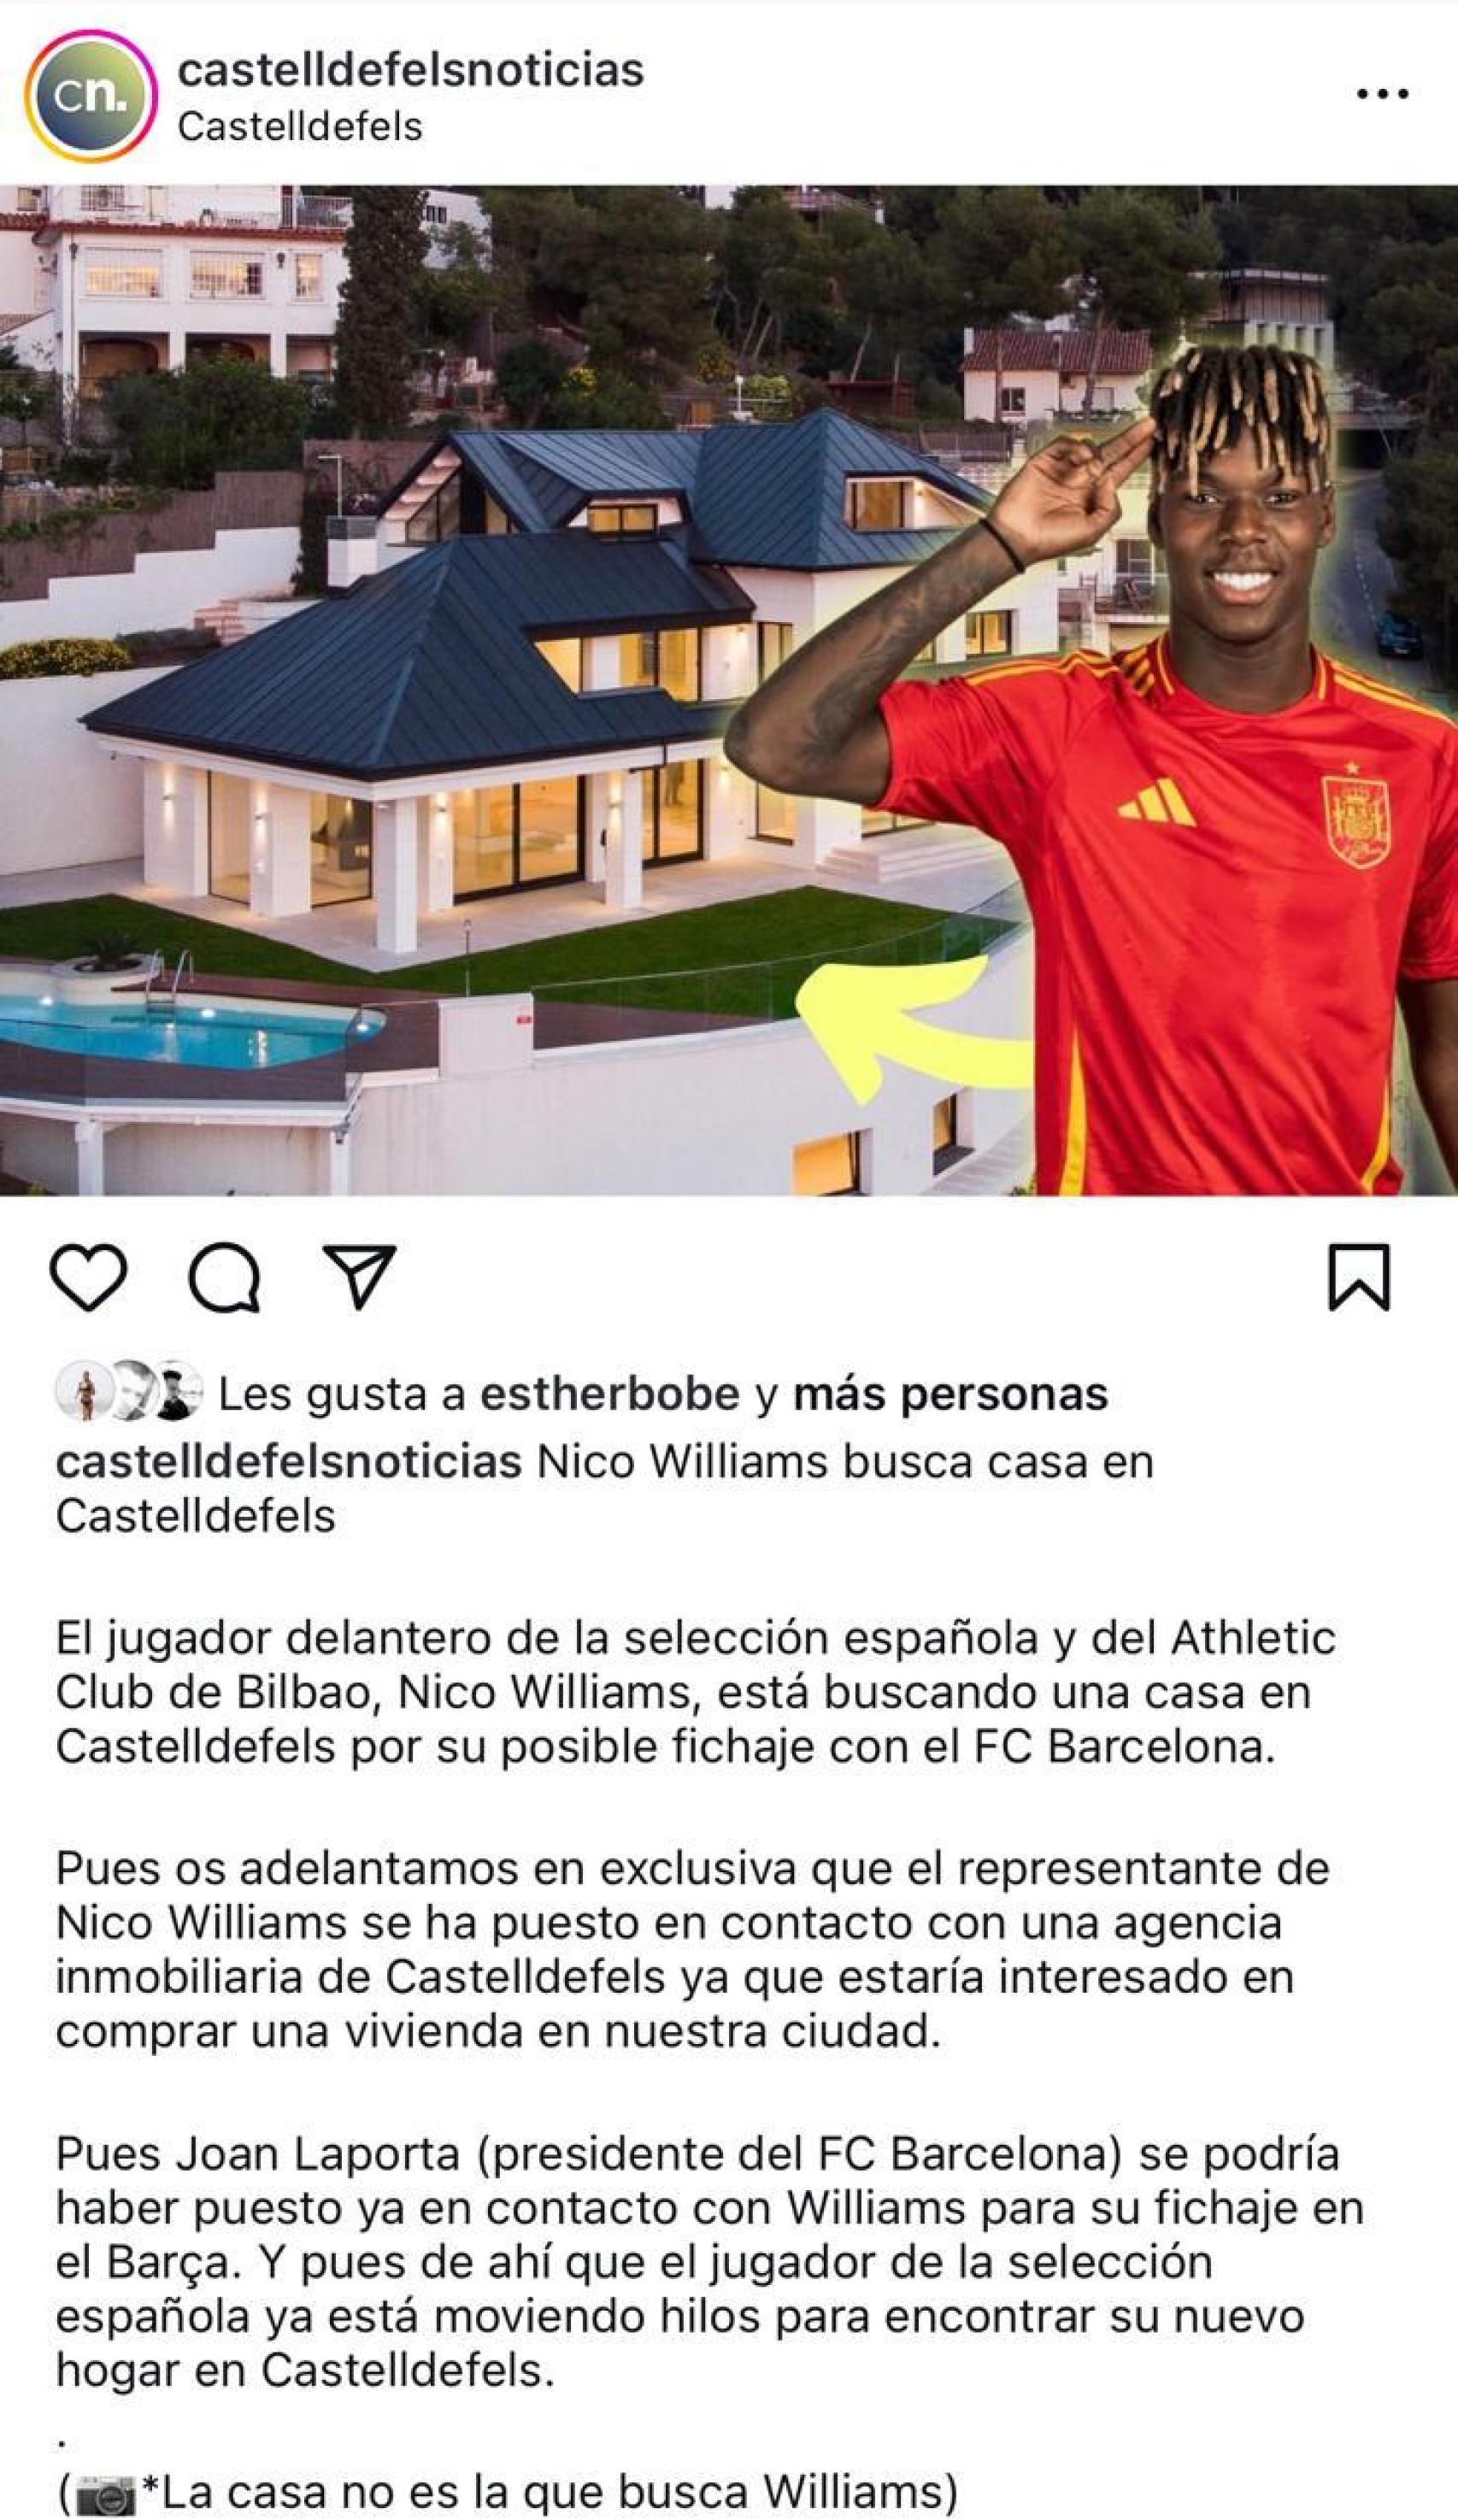 Nico Williams busca casa en Castelldefels, según 'castelldefelsnoticias'